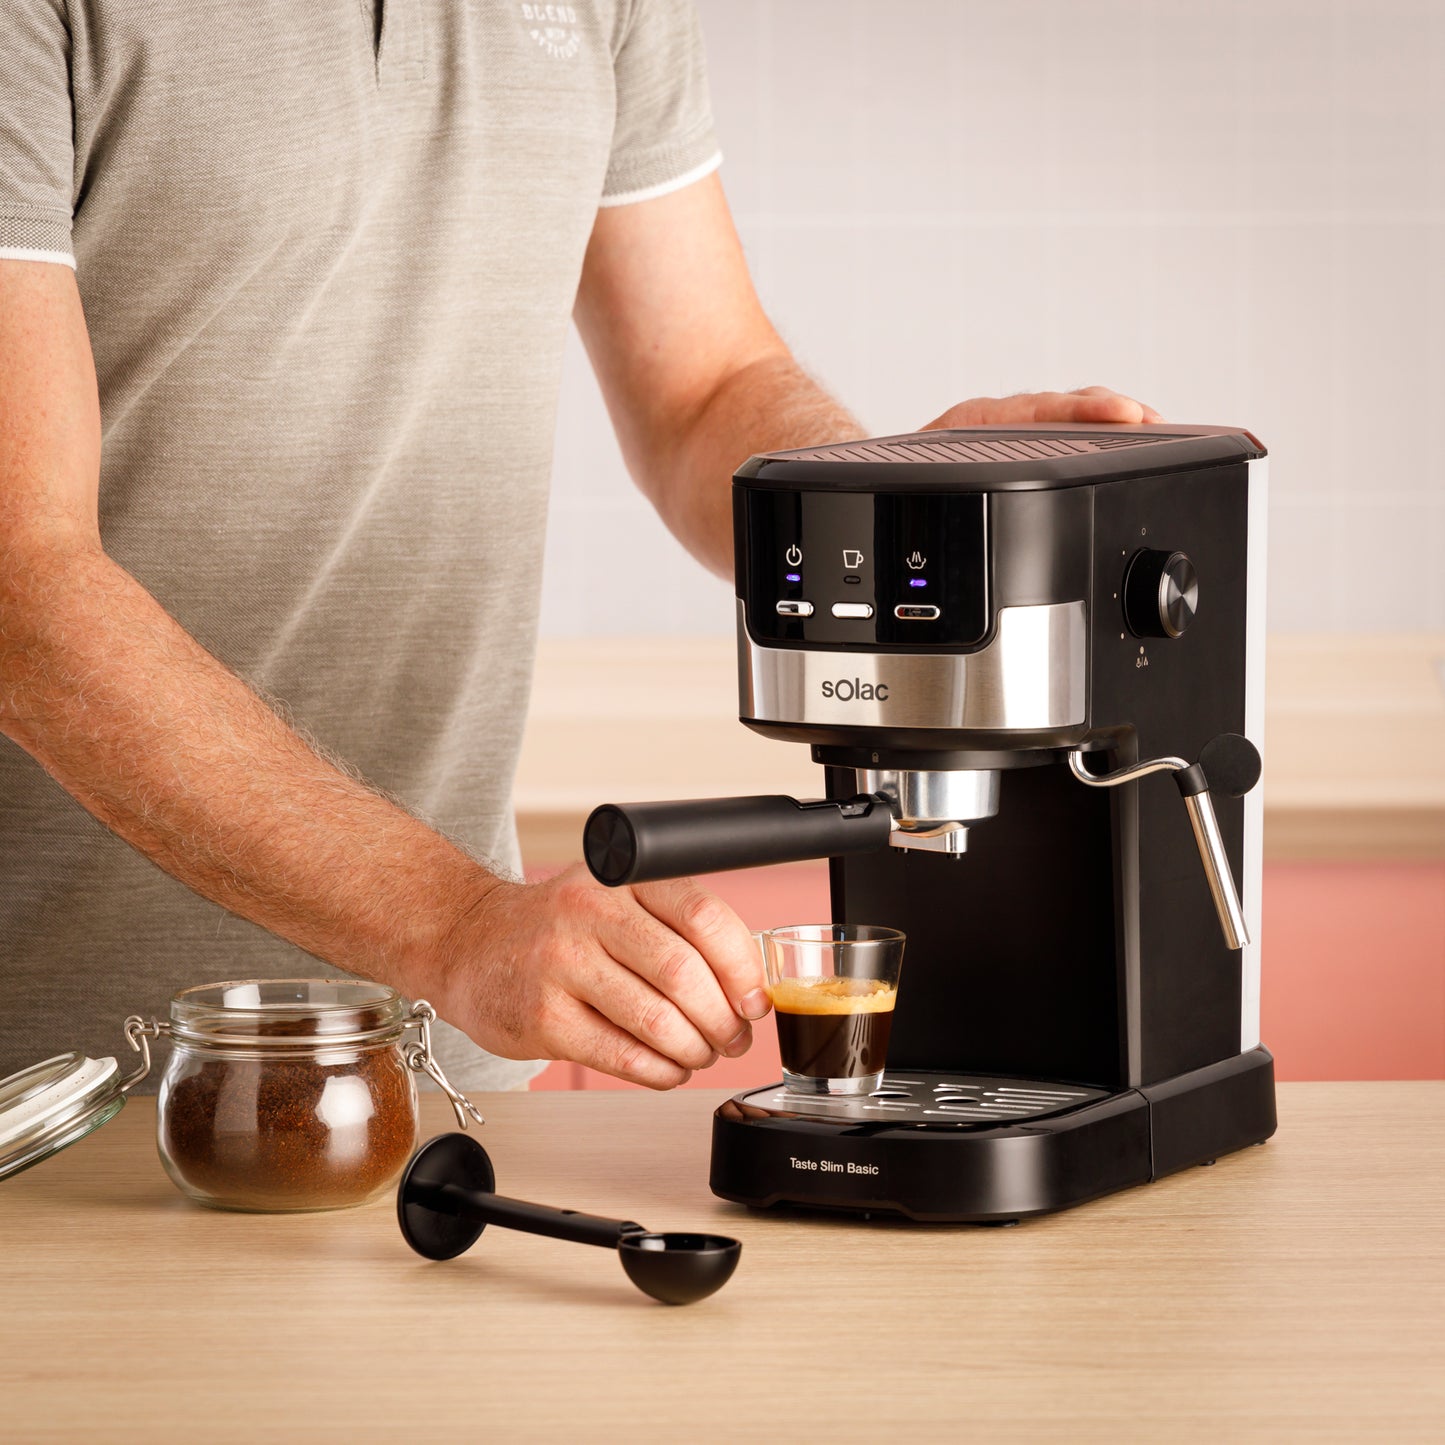 Prove a máquina de café expresso Slim Basic